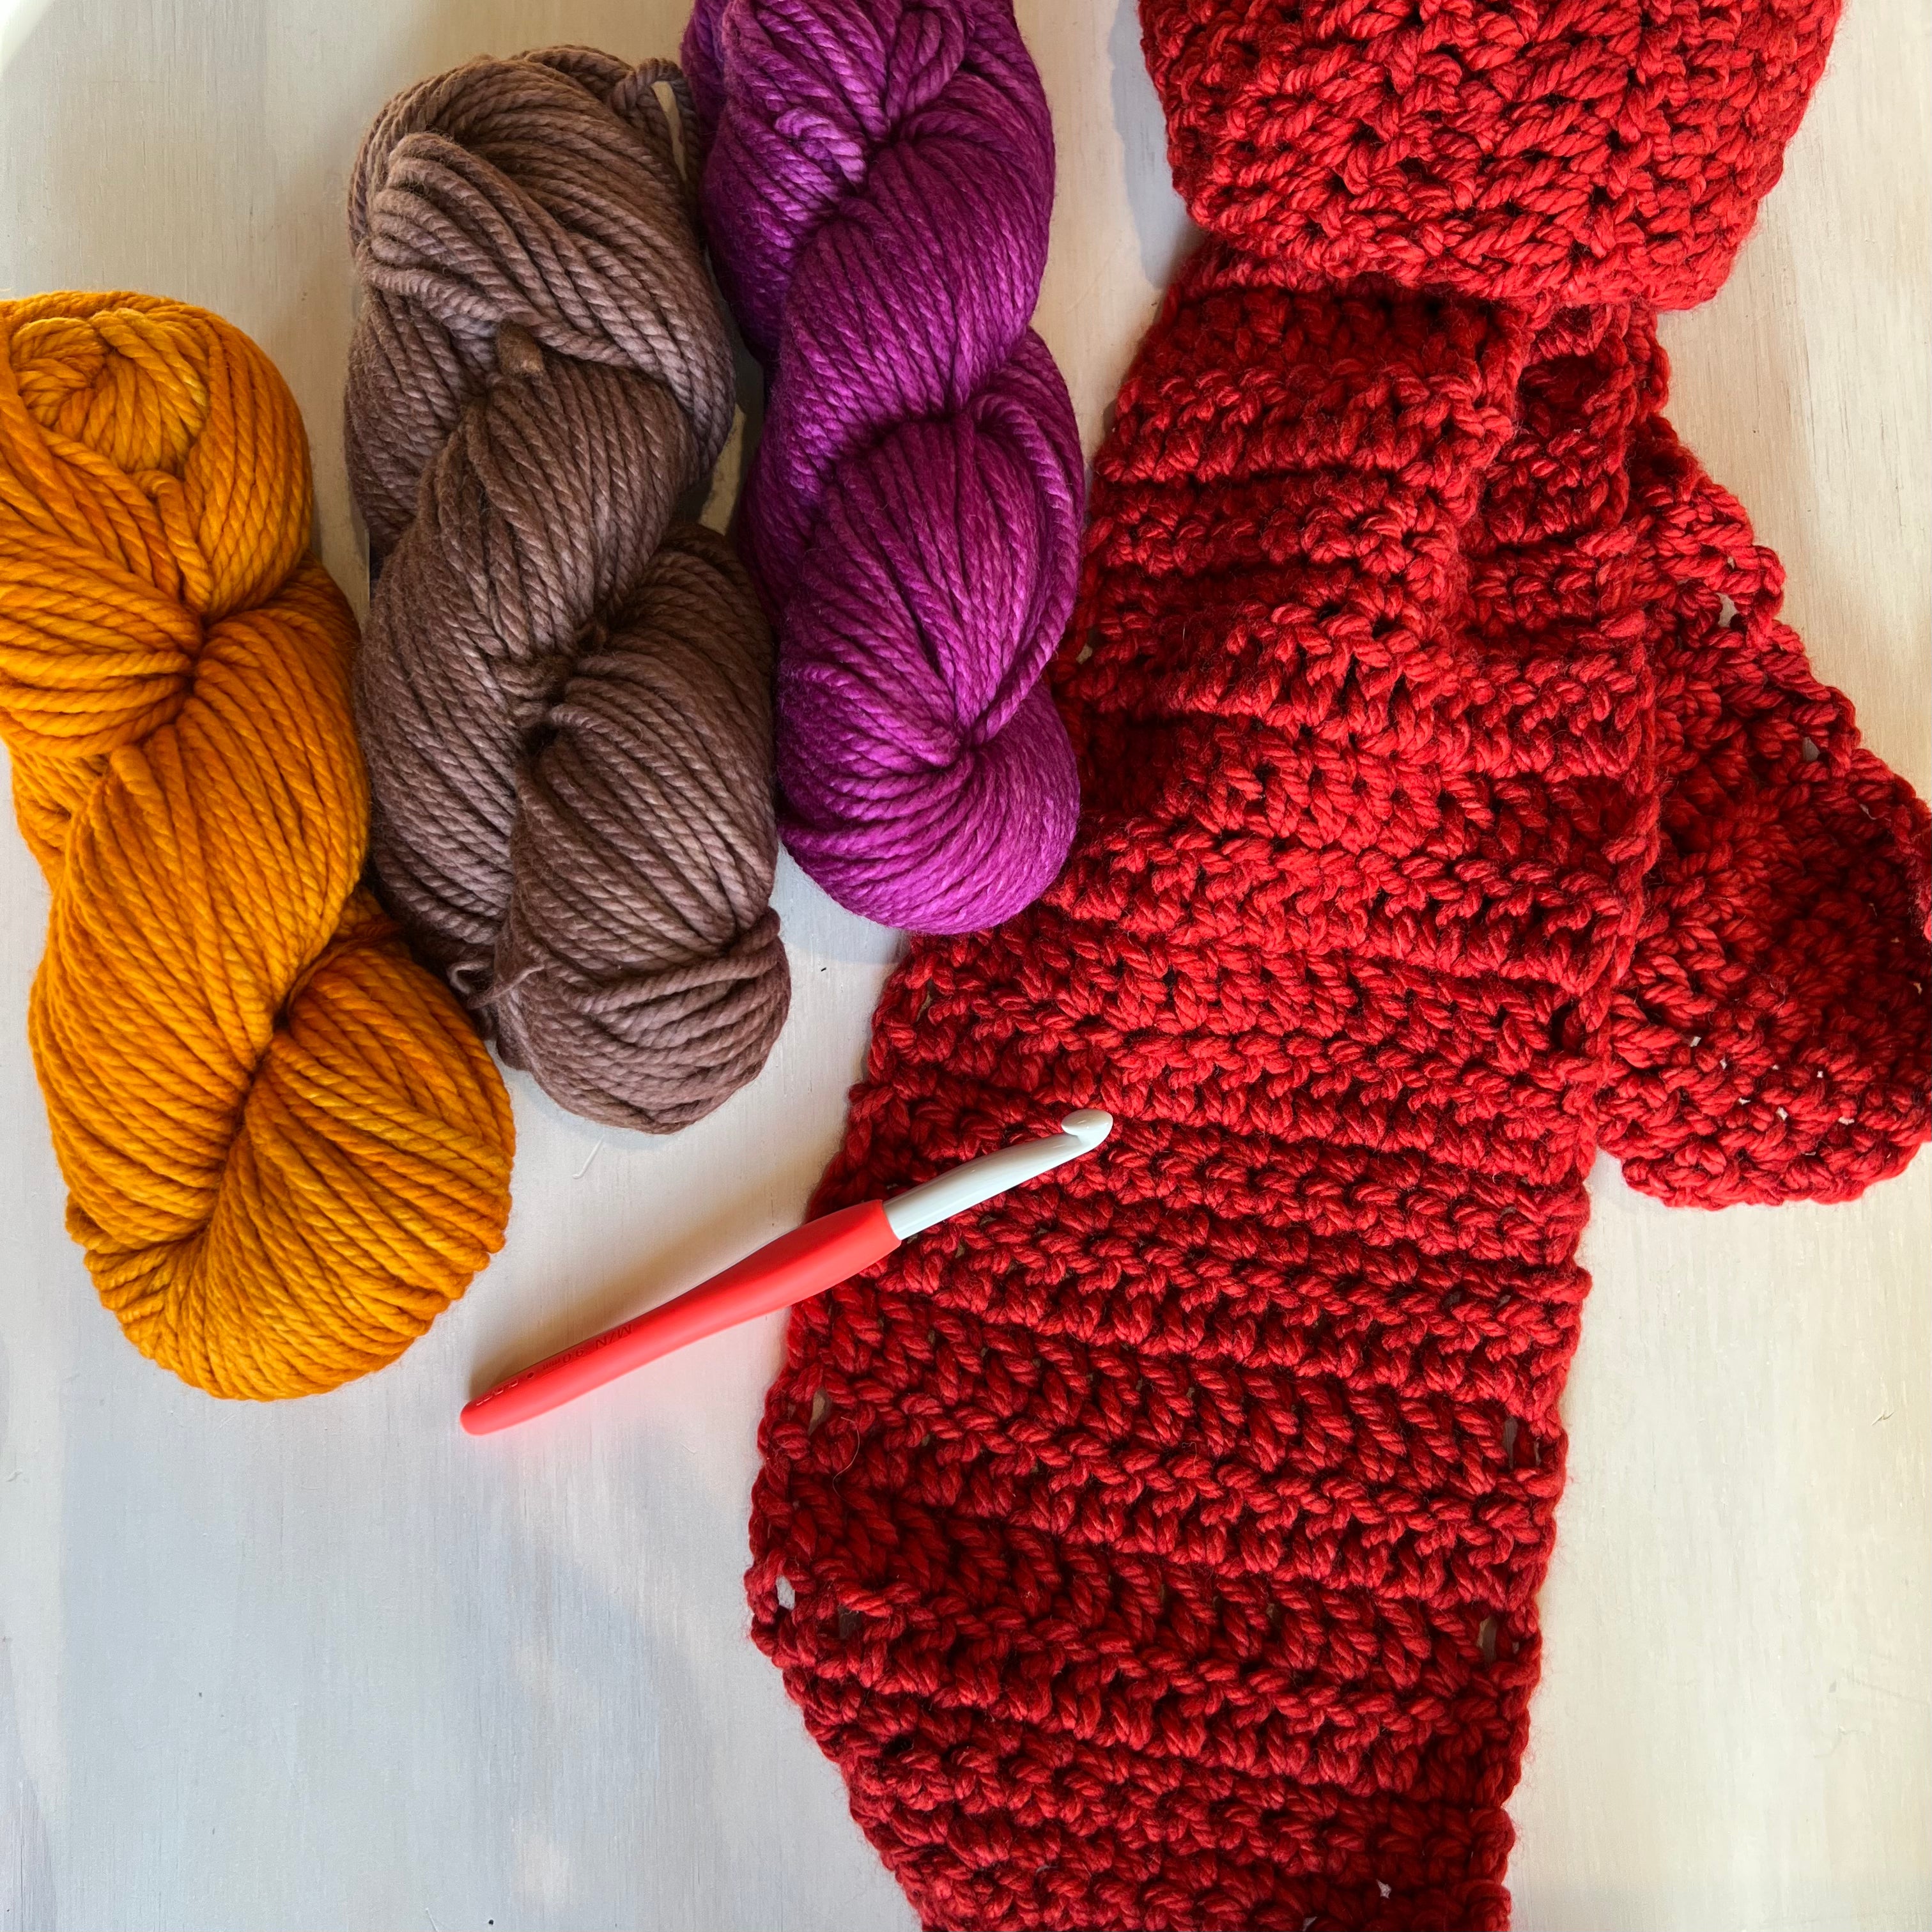 Absolute Beginner - Learn to Crochet